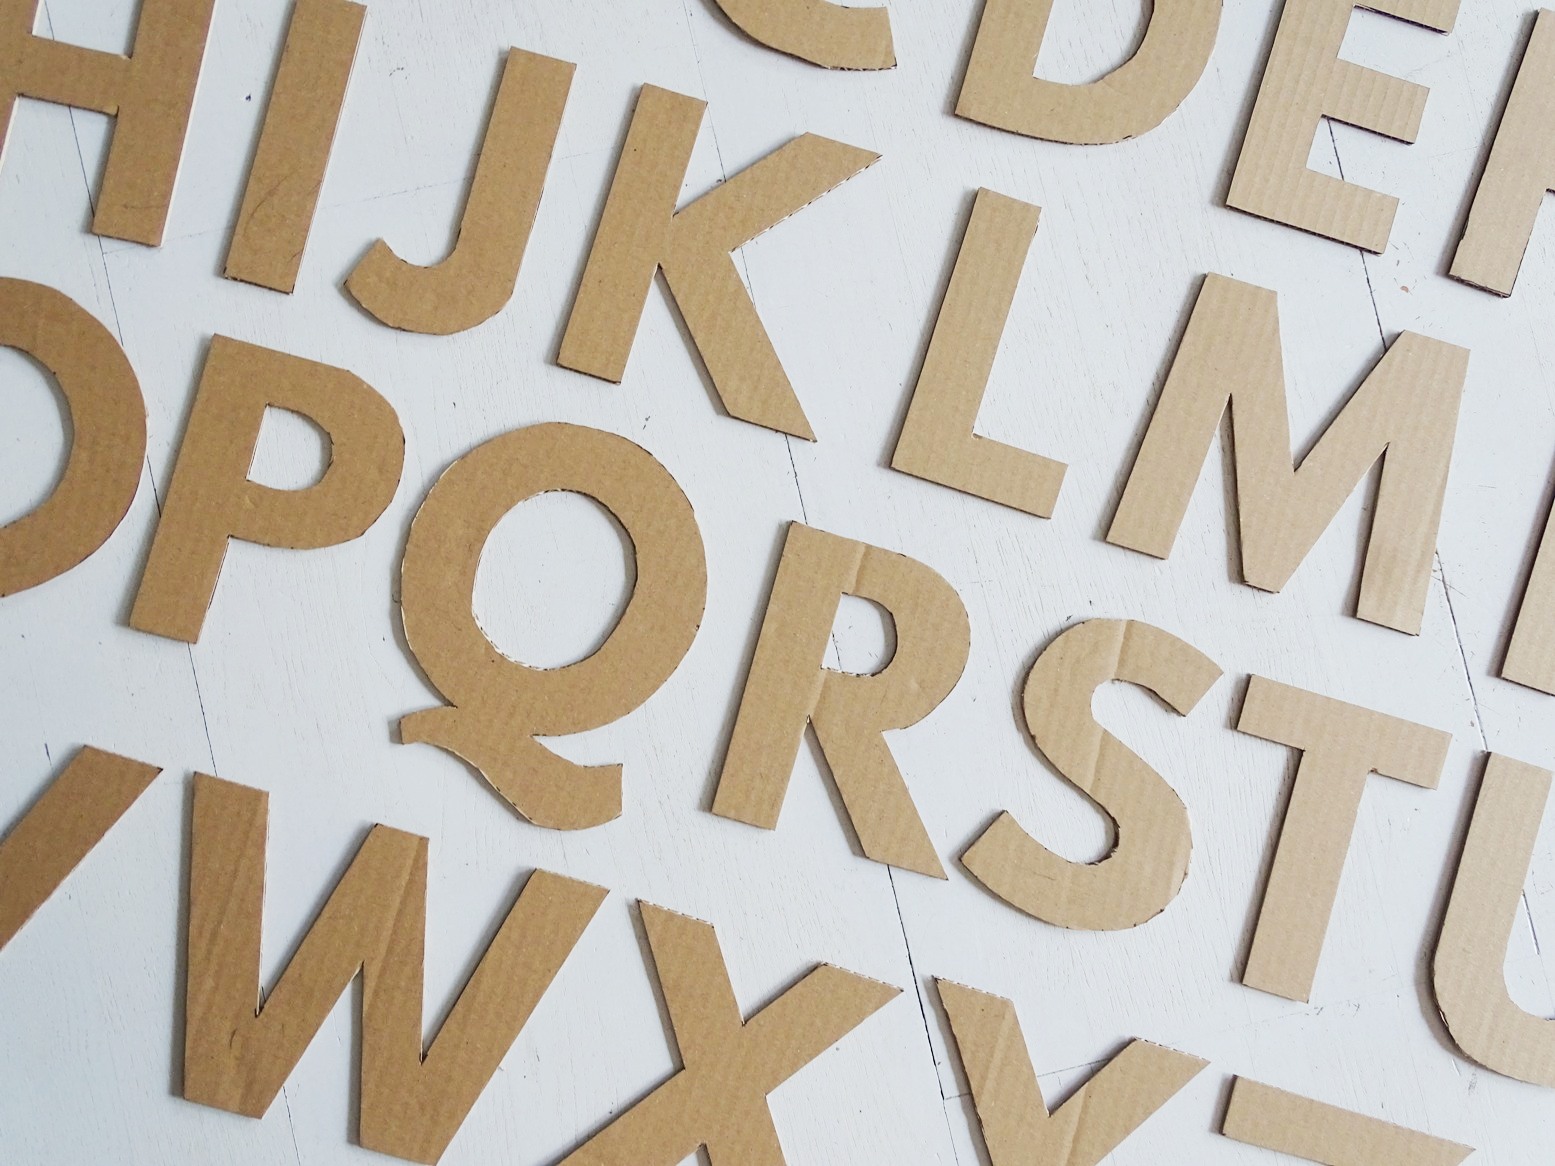 Buchstaben aus Karton basteln - ein Upcycling-DIY-Projekt aus Verpackungsmaterial